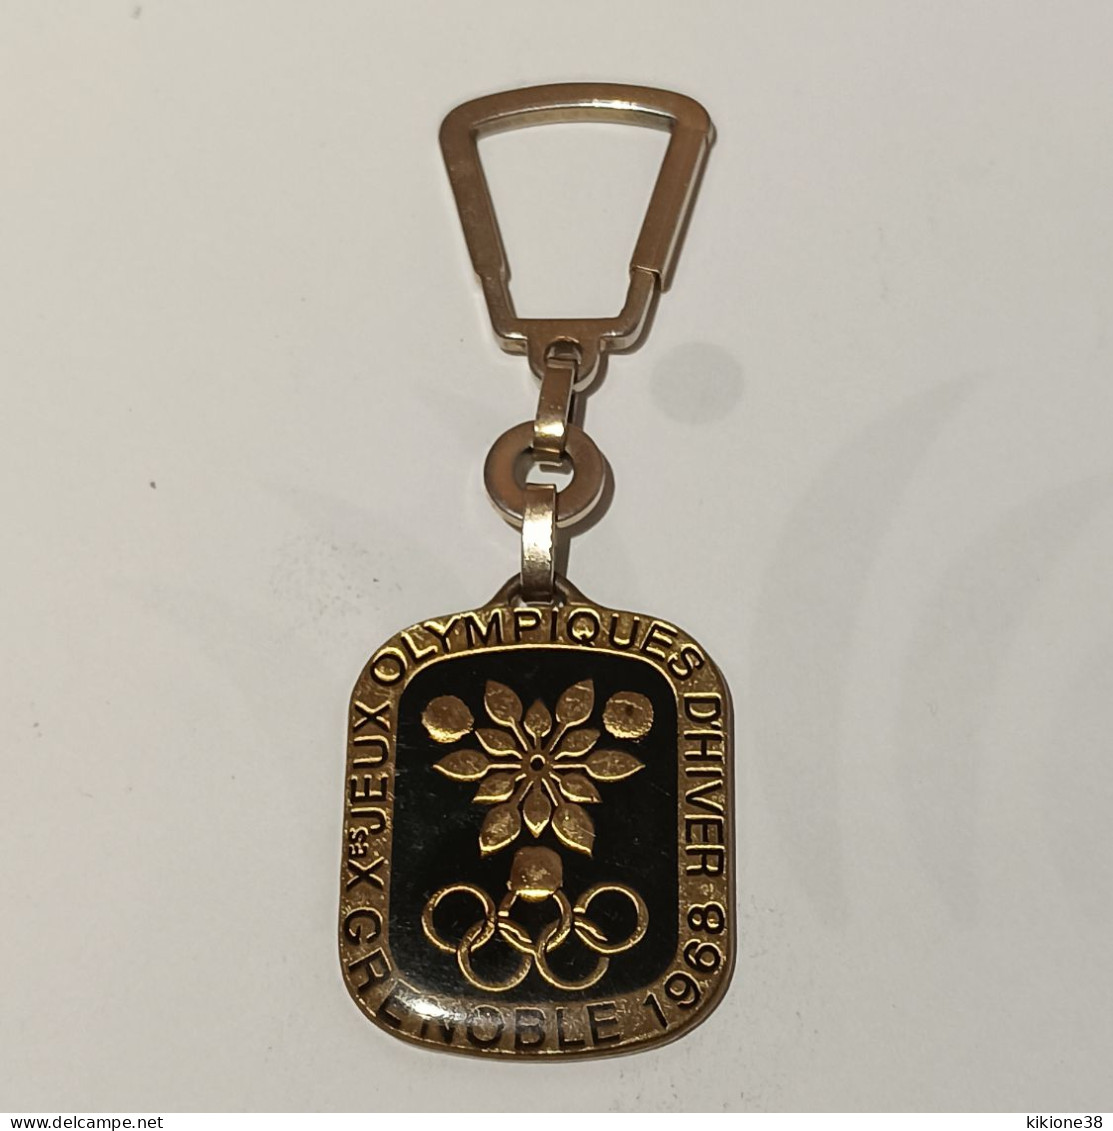 Très Rare Porte Clé Des Jeux Olympiques De Grenoble 68 Fond Noir Sous Résine. Objet Souvenir, Médaille, Badge, Pin's. - Apparel, Souvenirs & Other